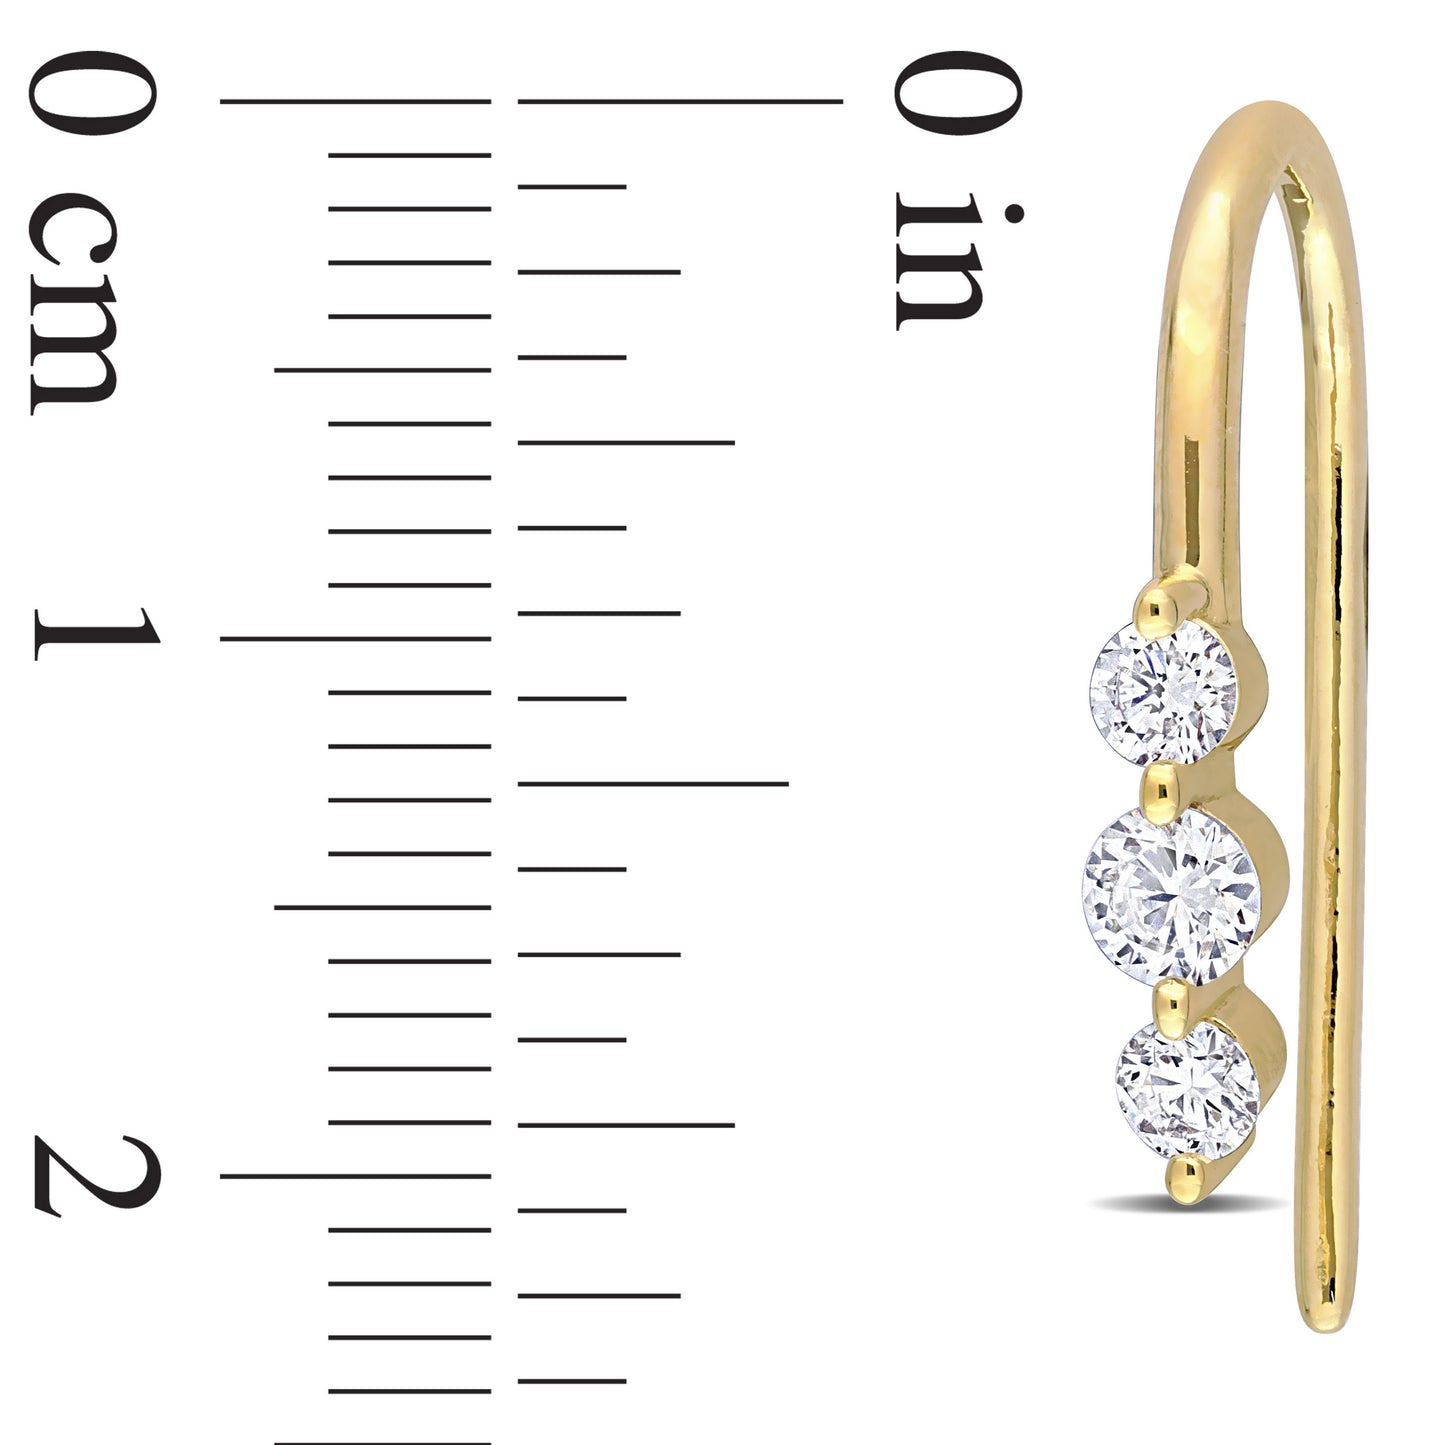 3-Stone Hook Diamond Earrings in 18k Yellow Silver